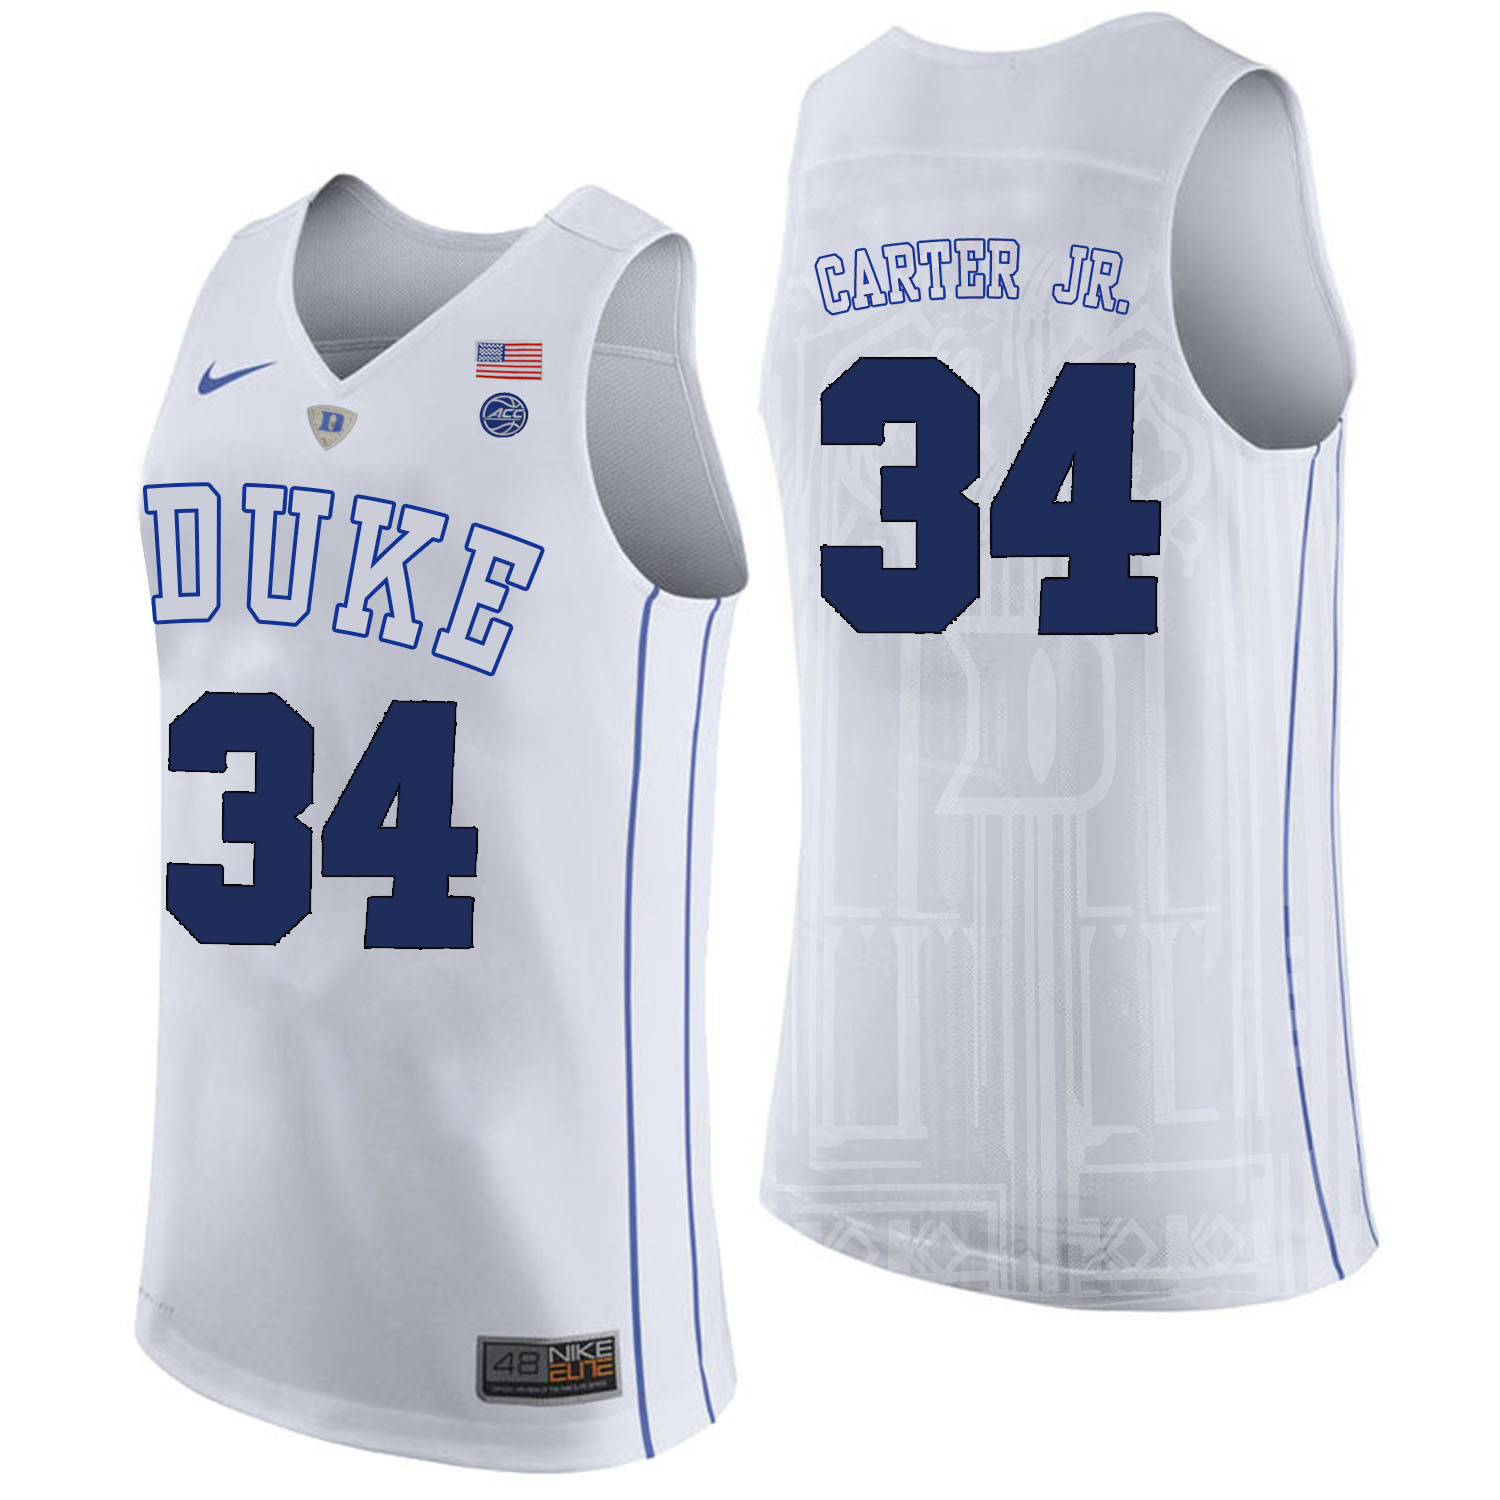 Duke Blue Devils 34 Wendell Carter Jr. White College Basketball Jersey